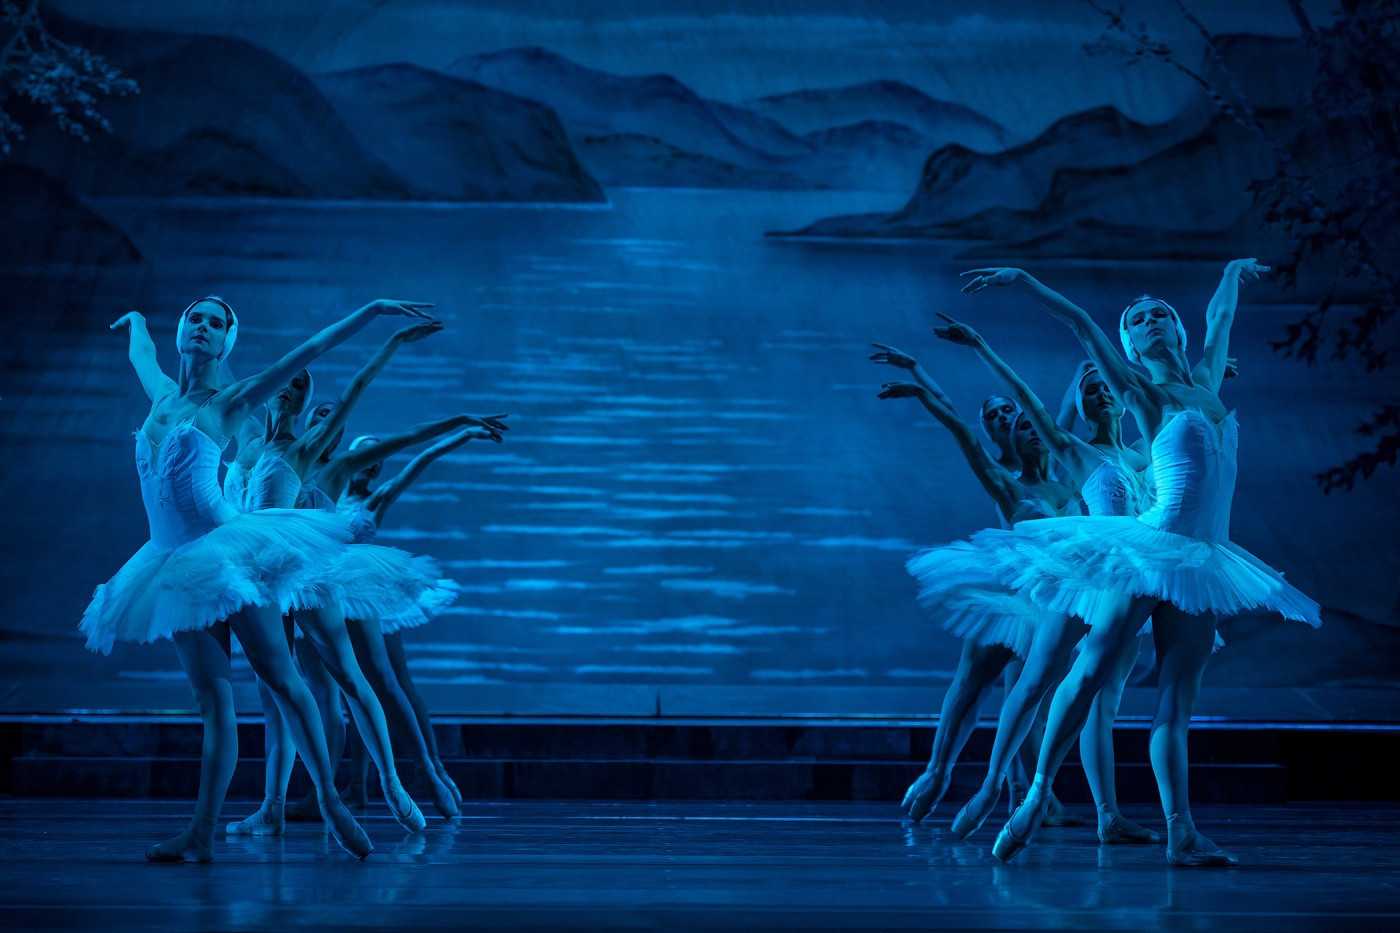 балет лебединое озеро чайковский